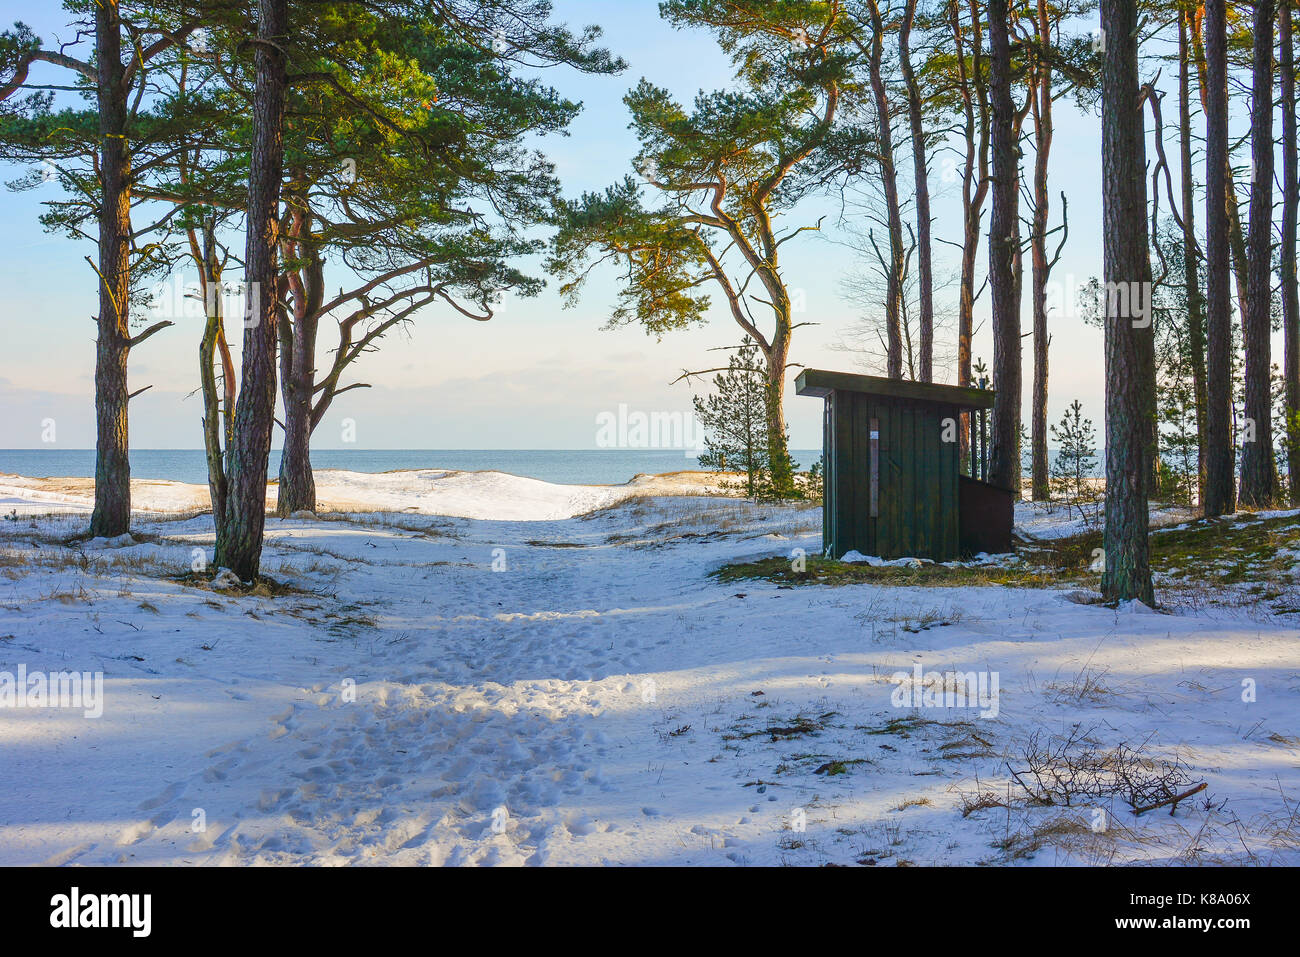 C'est la célèbre plage en dehors de la Suède, a appelé l'ahus kantarellen. La photo est prise lorsque l'hiver est arrivé. Banque D'Images